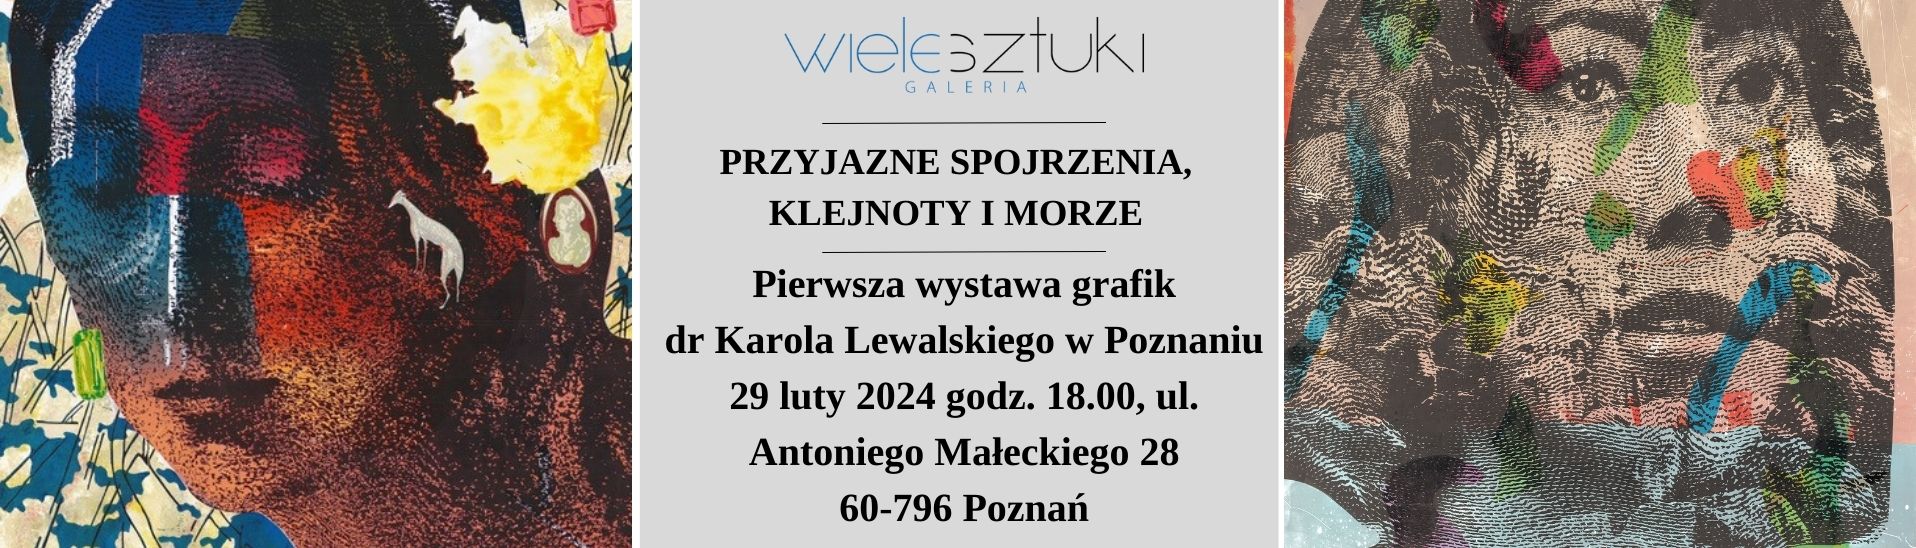 Galeria Wiele Sztuki, informacja o wystawie Karola Lewalskiego w Poznaniu, 29 luty 2024